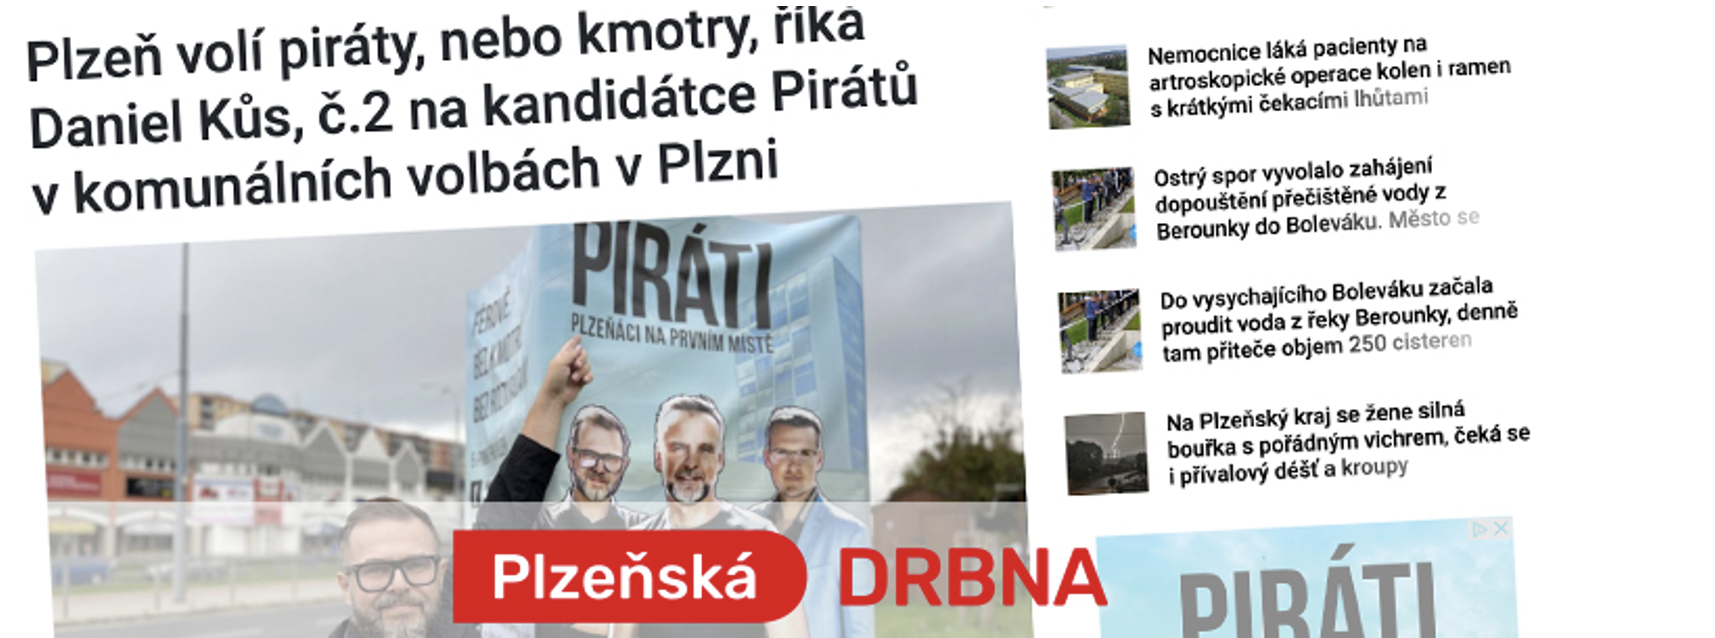 Plzeň volí piráty, nebo kmotry, říká Daniel Kůs, č.2 na kandidátce Pirátů v komunálních volbách v Plzni